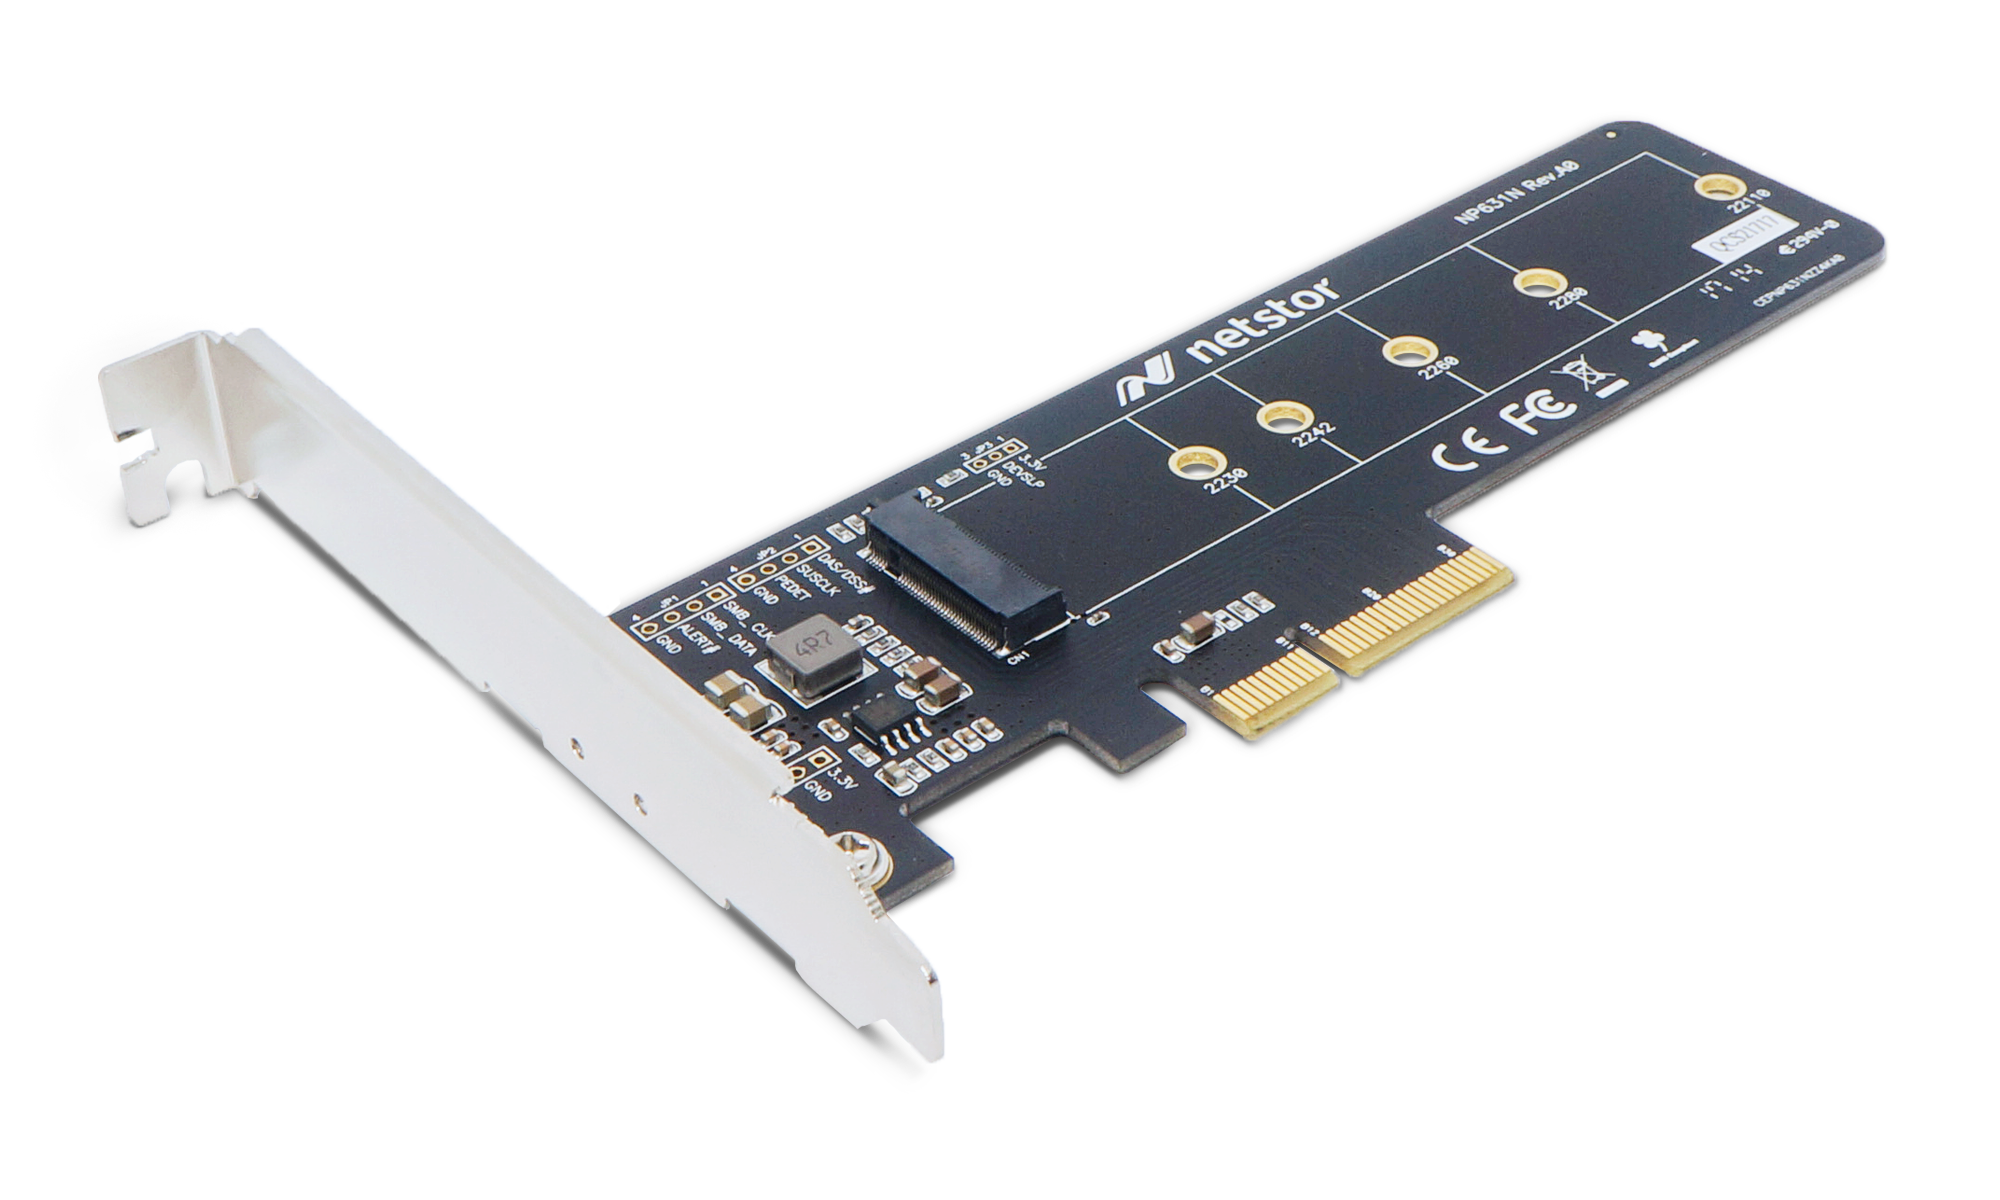 Pci e x1 ssd. Переходник для m2 NVME. 1x m.2 SSD Combo Slot (NVME PCIE gen3 / SATA). PCI-E x1 NVME переходник. Адаптер SSD, PCI-E x1.